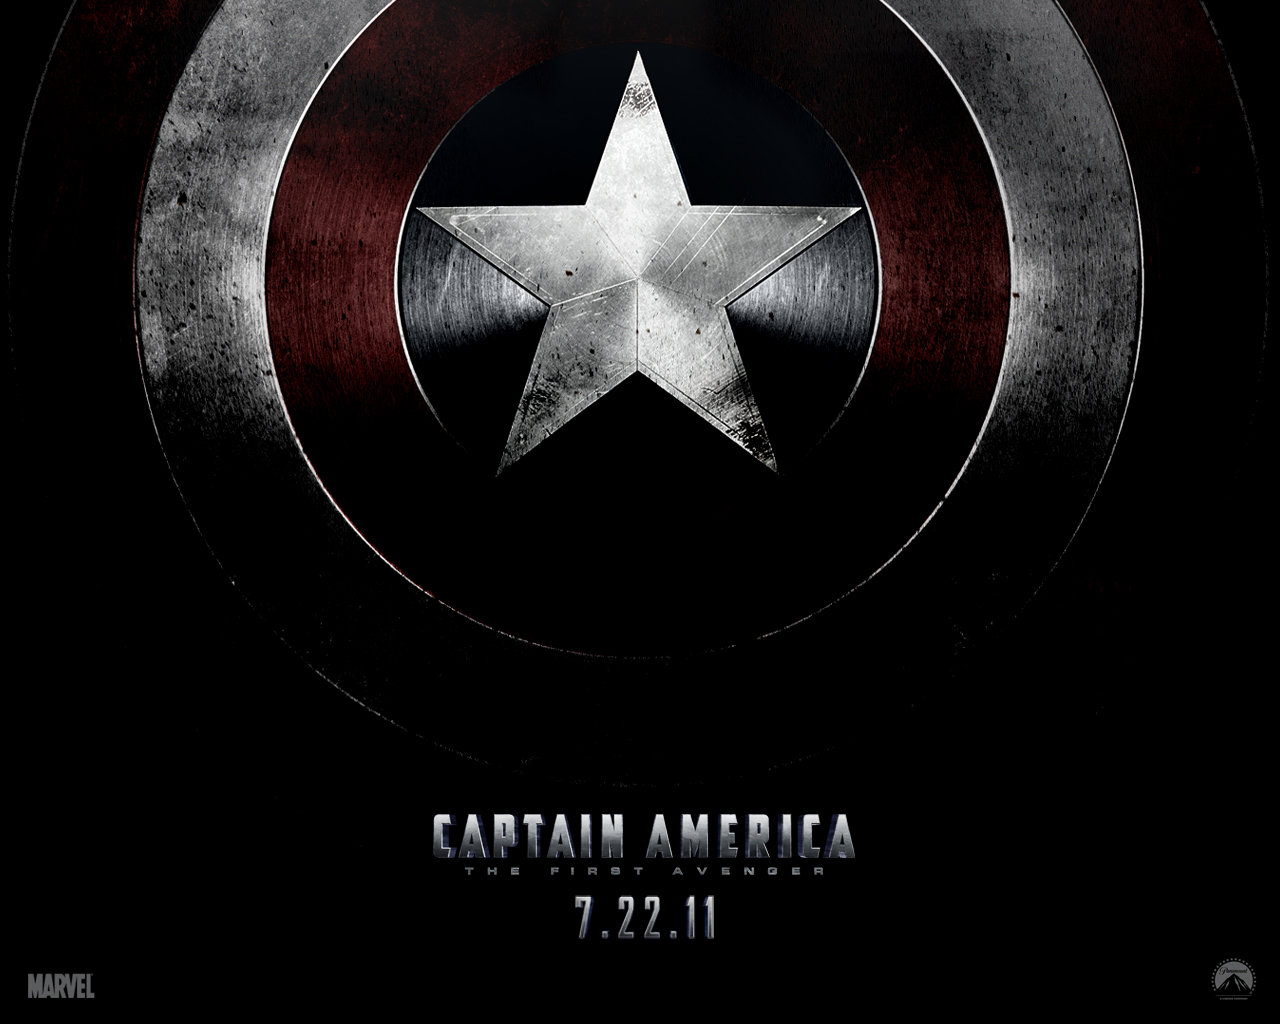 http://4.bp.blogspot.com/-O4Nn7L1S-9I/TwaUQ8lPxdI/AAAAAAAADls/fR5PnjfyIxA/s1600/Captain-America-The-First-Avenger-06.jpg